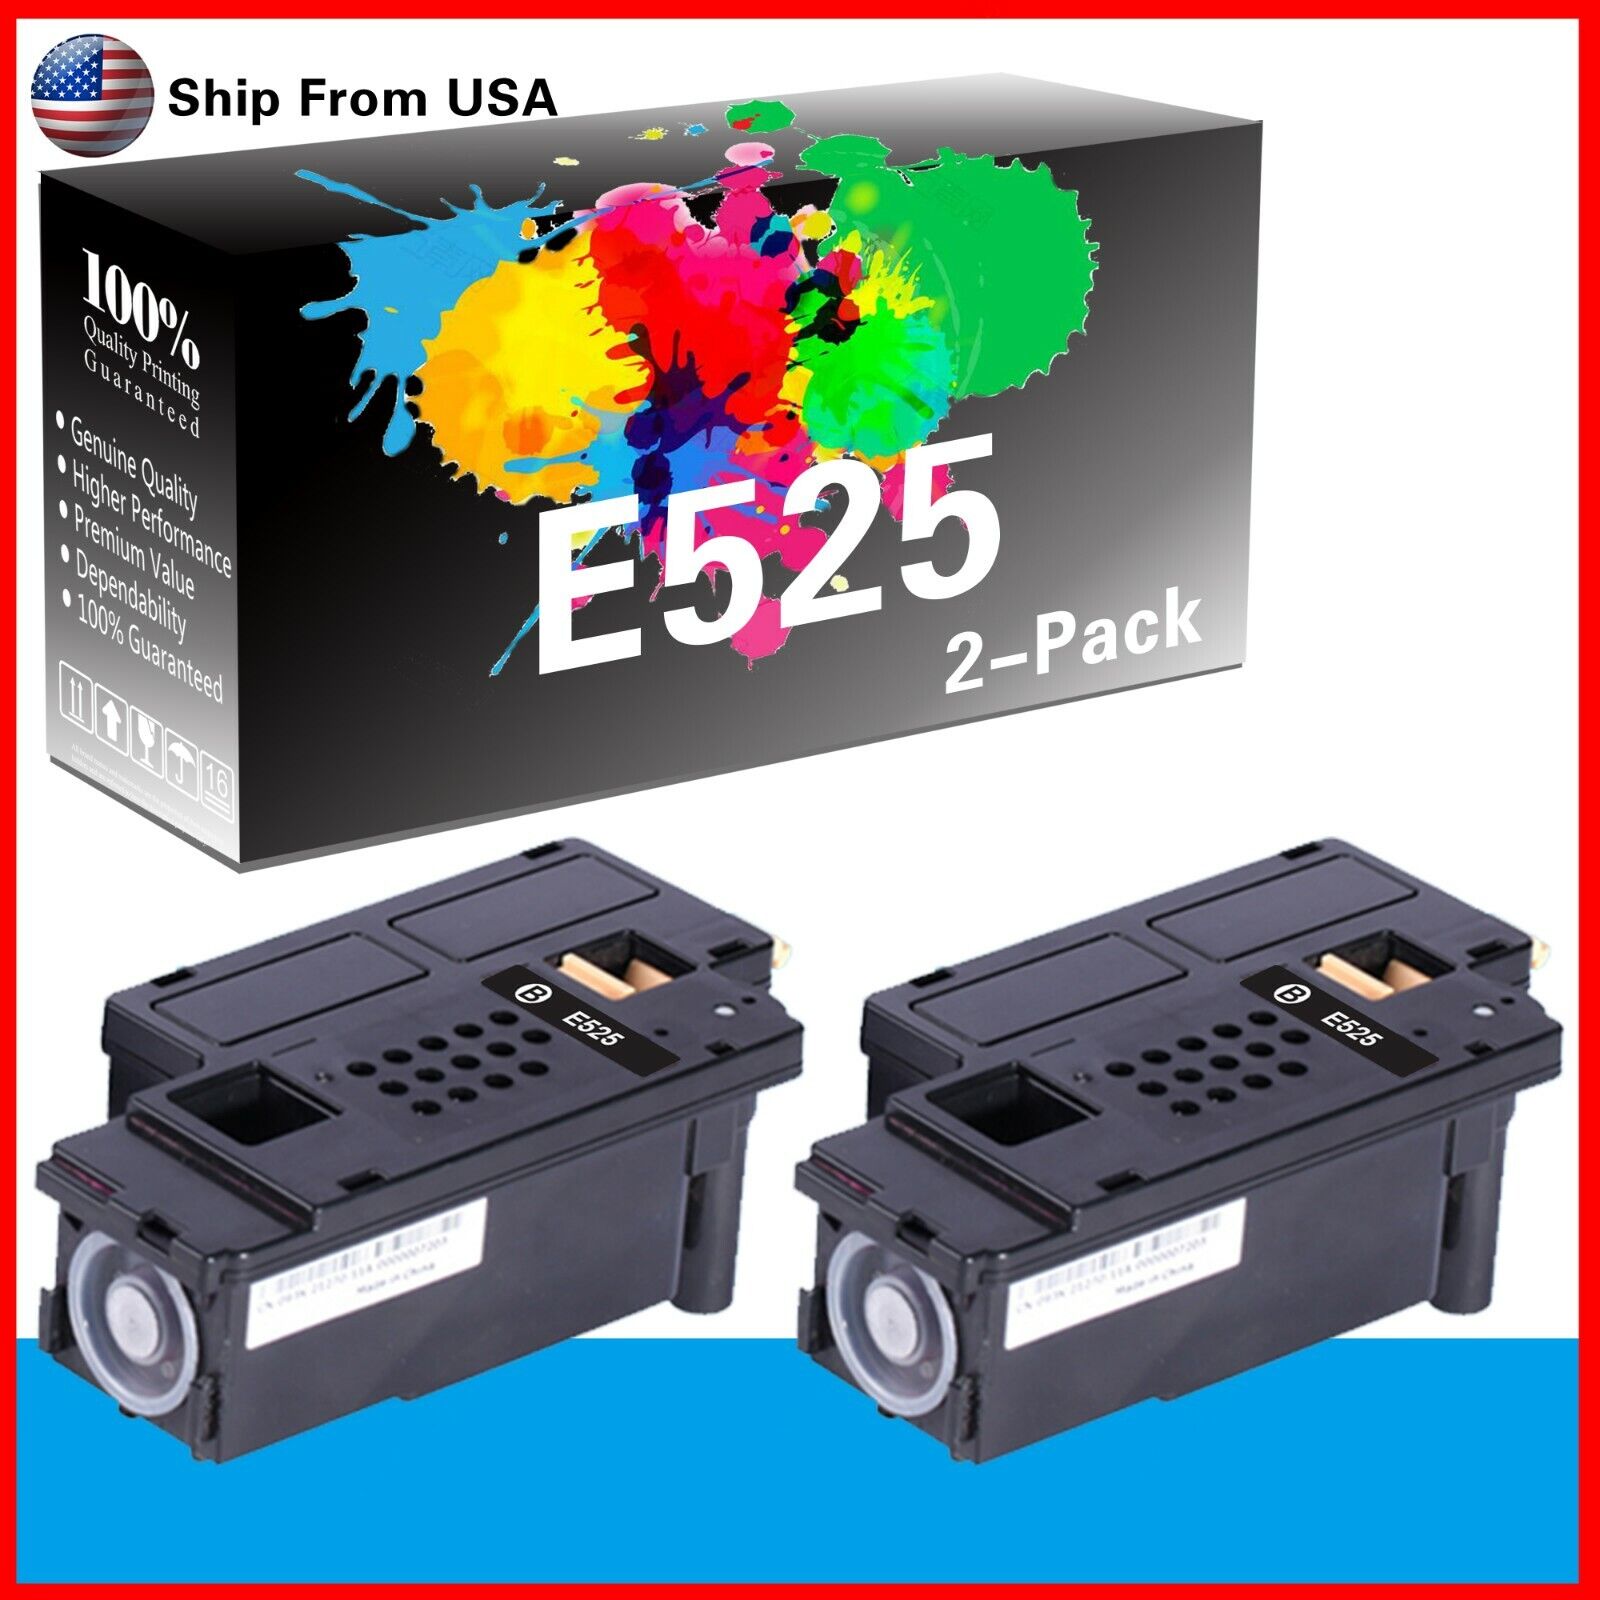 2PK Compatible E525 Toner Cartridge for Dell 525W Printer